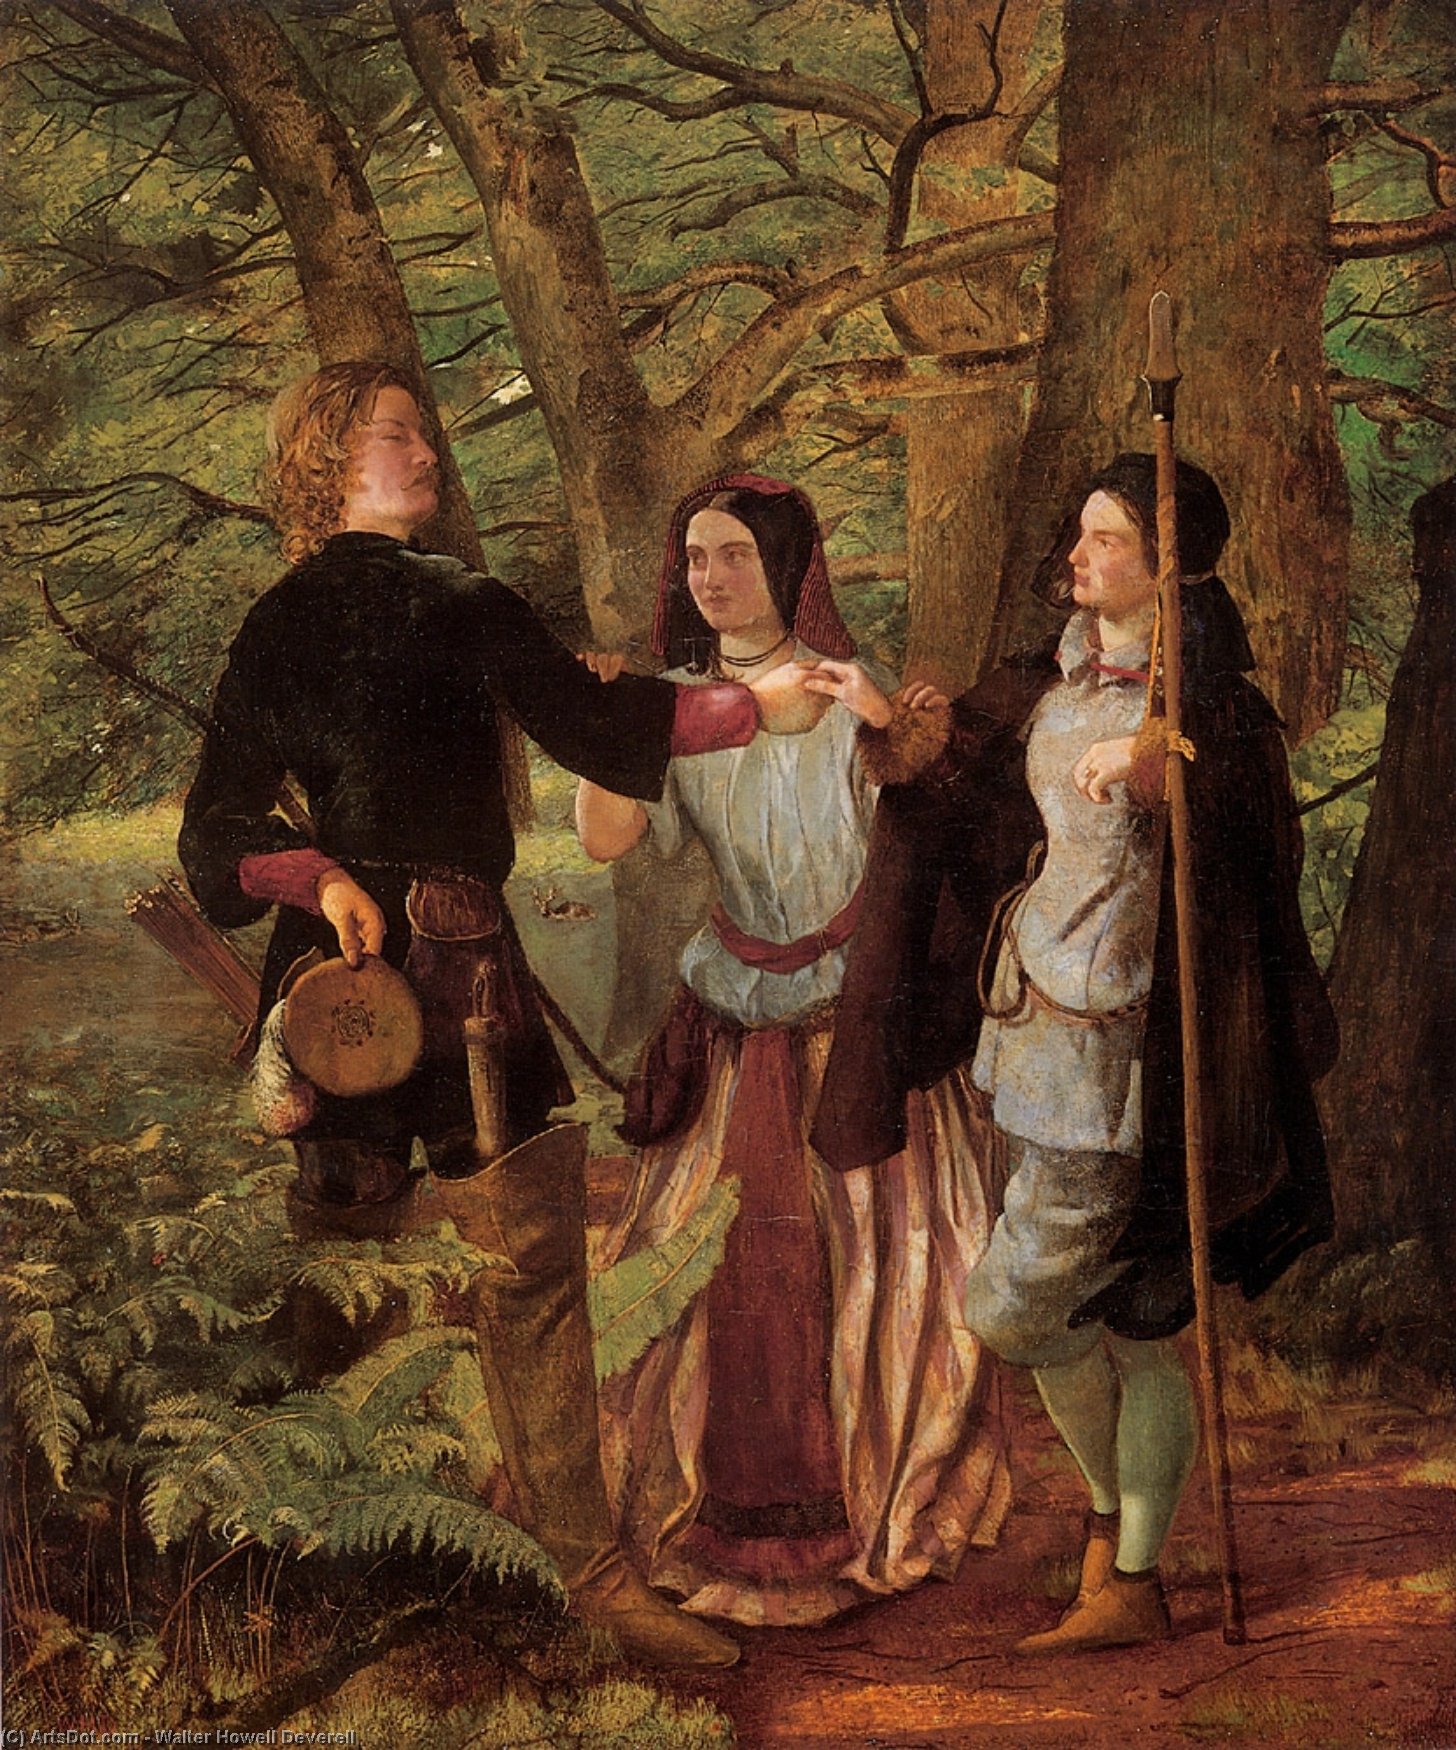 WikiOO.org - Enciklopedija likovnih umjetnosti - Slikarstvo, umjetnička djela Walter Howell Deverell - The Mock Marriage of Orlando and Rosalin